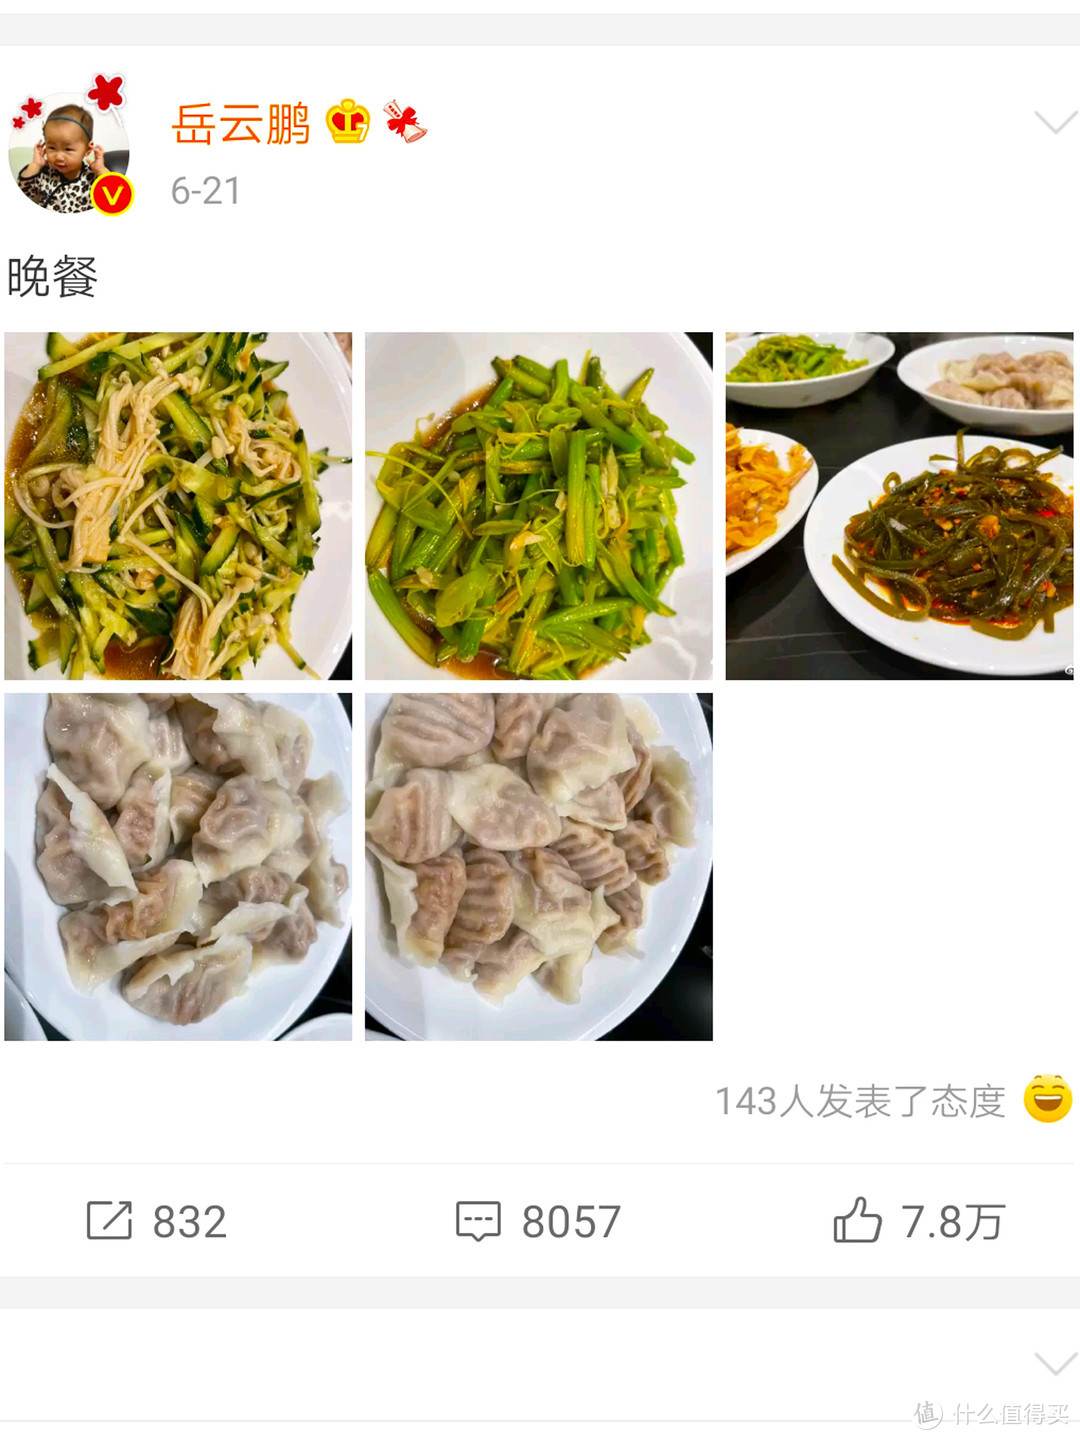 岳云鹏晒晚餐，获得十万点赞，网友：特别适合夏天吃，回家就做